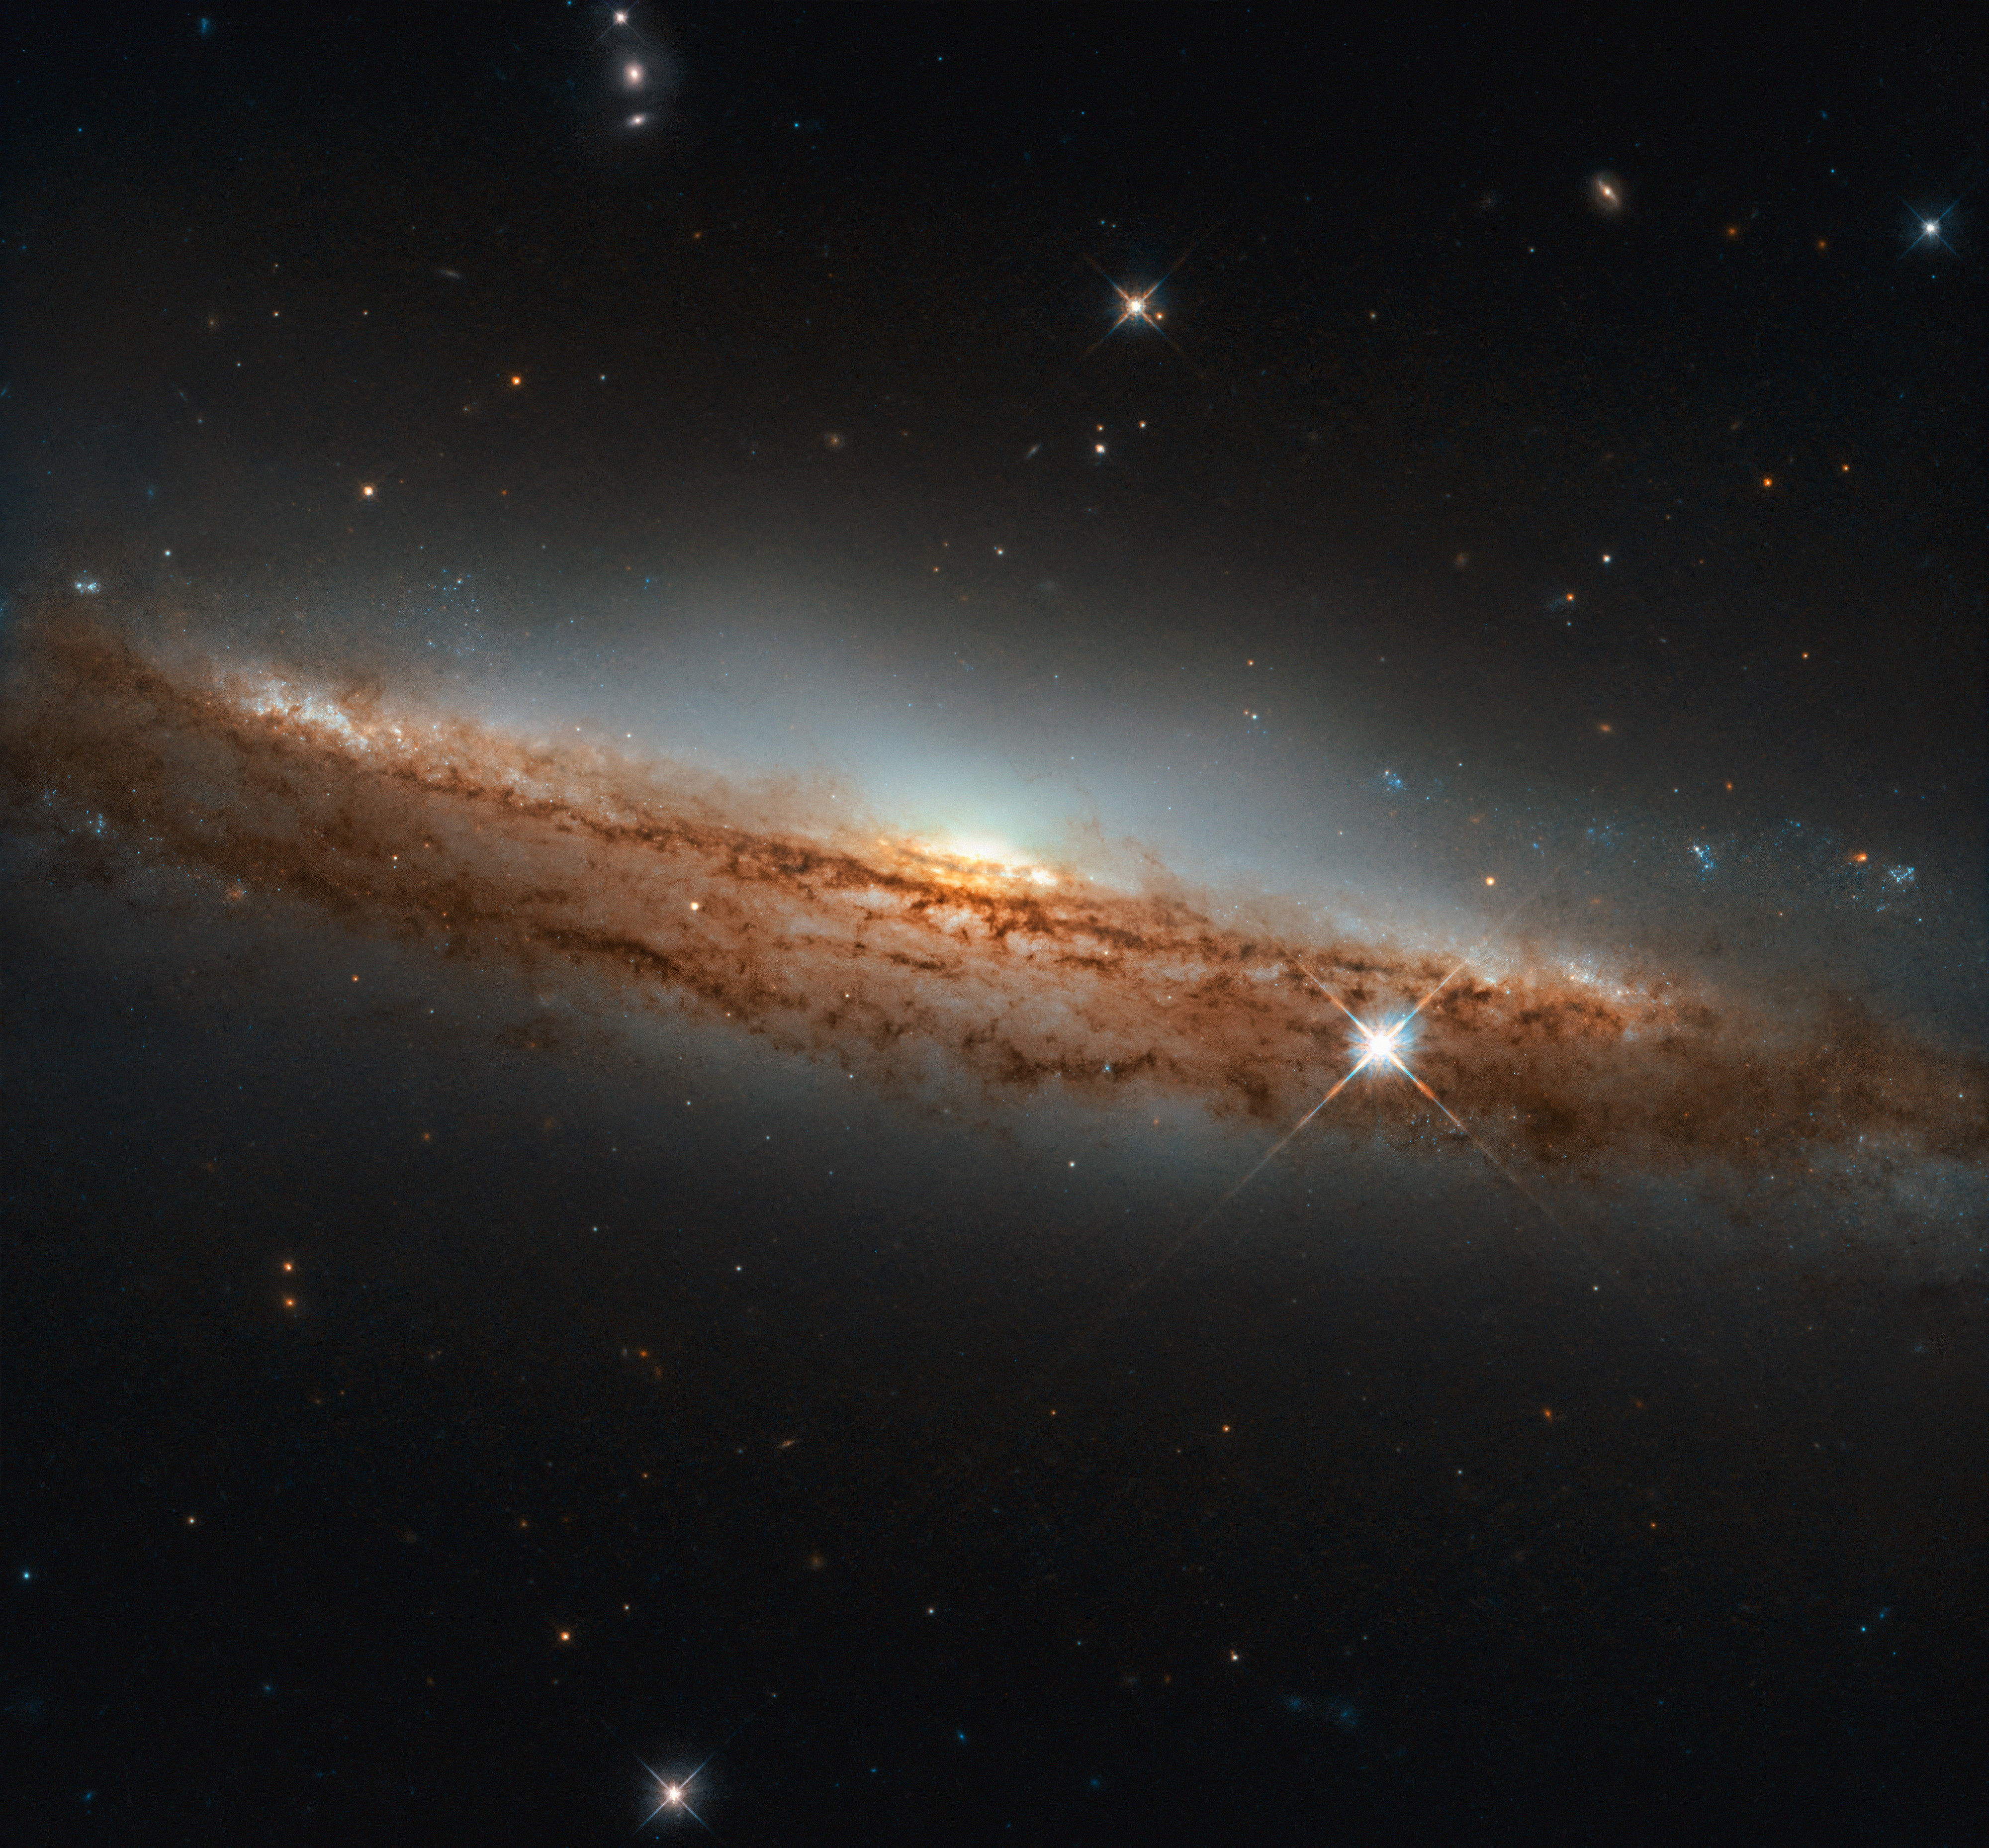 La galaxia espiral NGC 3717, situada a unos 60 millones de años luz de distancia en la constelación de Hydra (la Serpiente Marina). ESA / Hubble y NASA, D. Rosario.